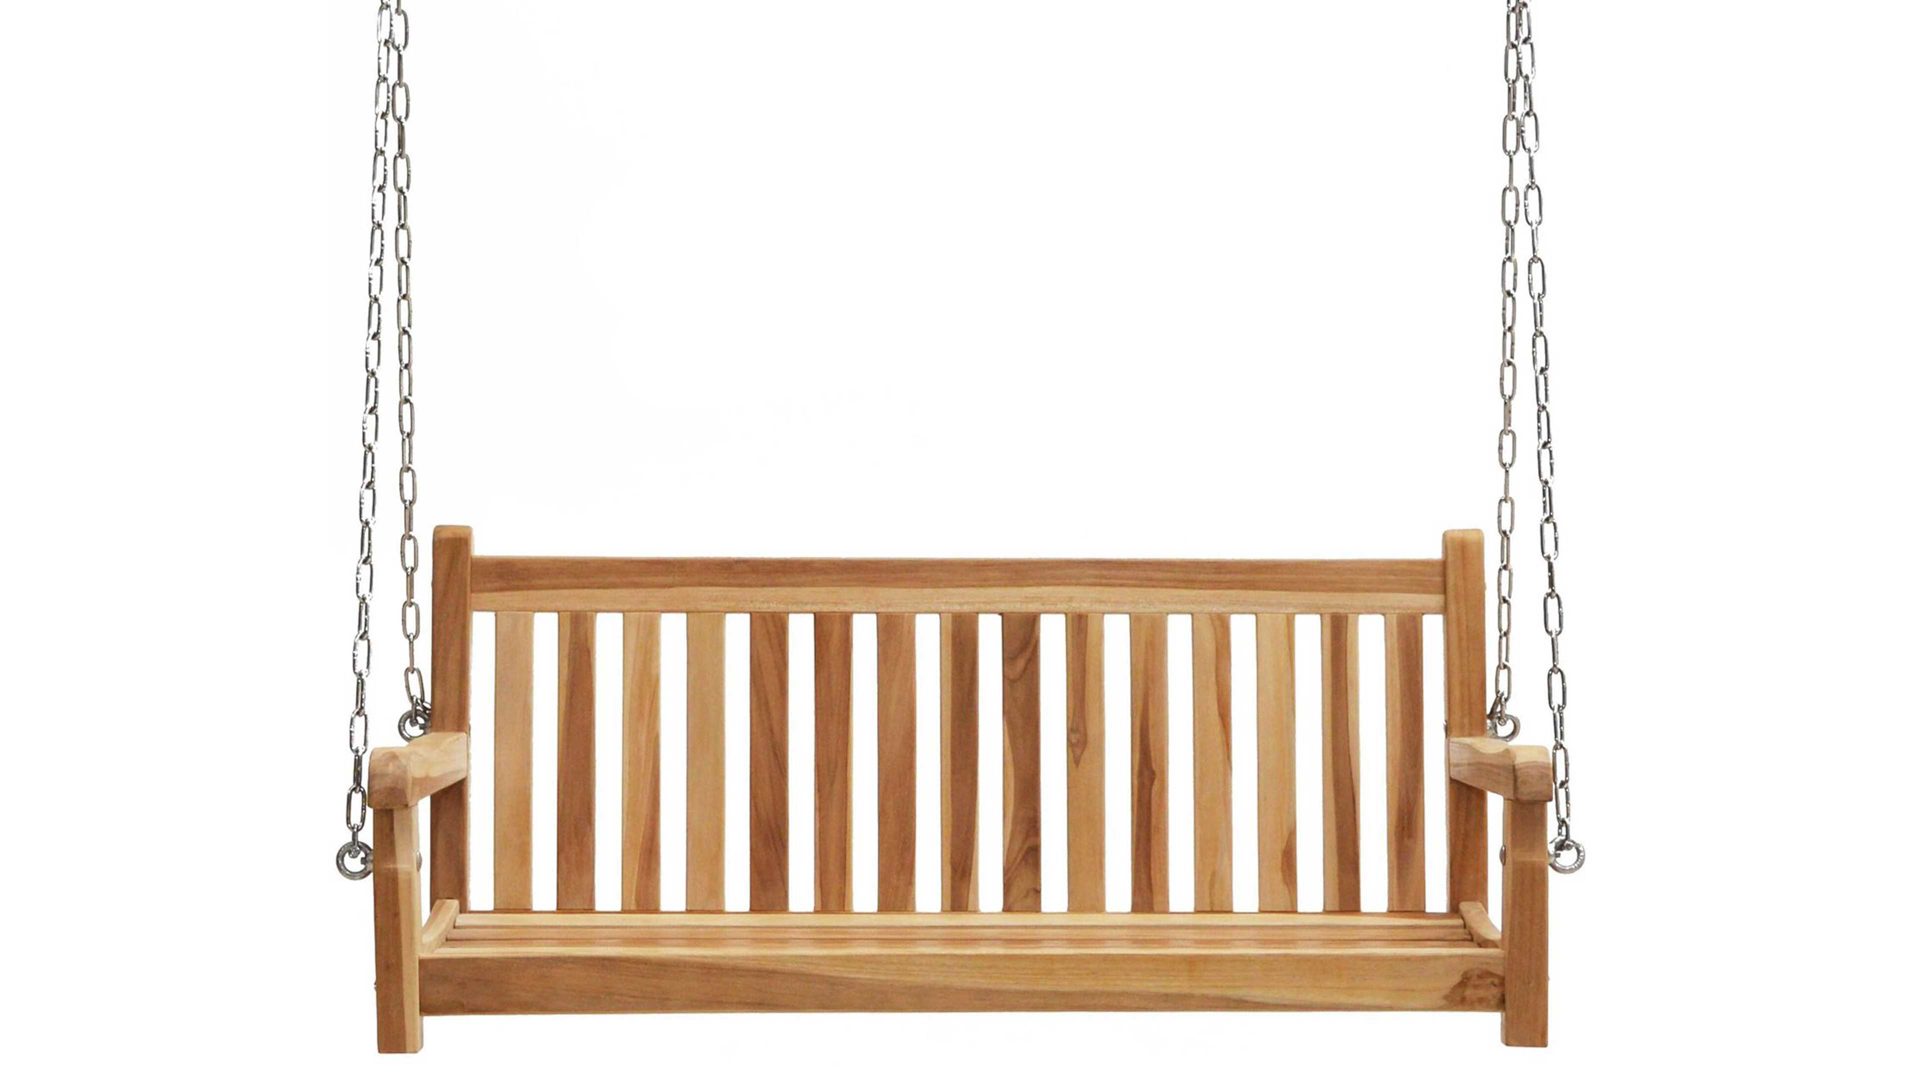 Gartenbank Ploß aus Holz in Holzfarben Ploß® Schaukelbank Virginia als Gartenmöbel honigfarbenes Teakholz – Länge ca. 130 cm